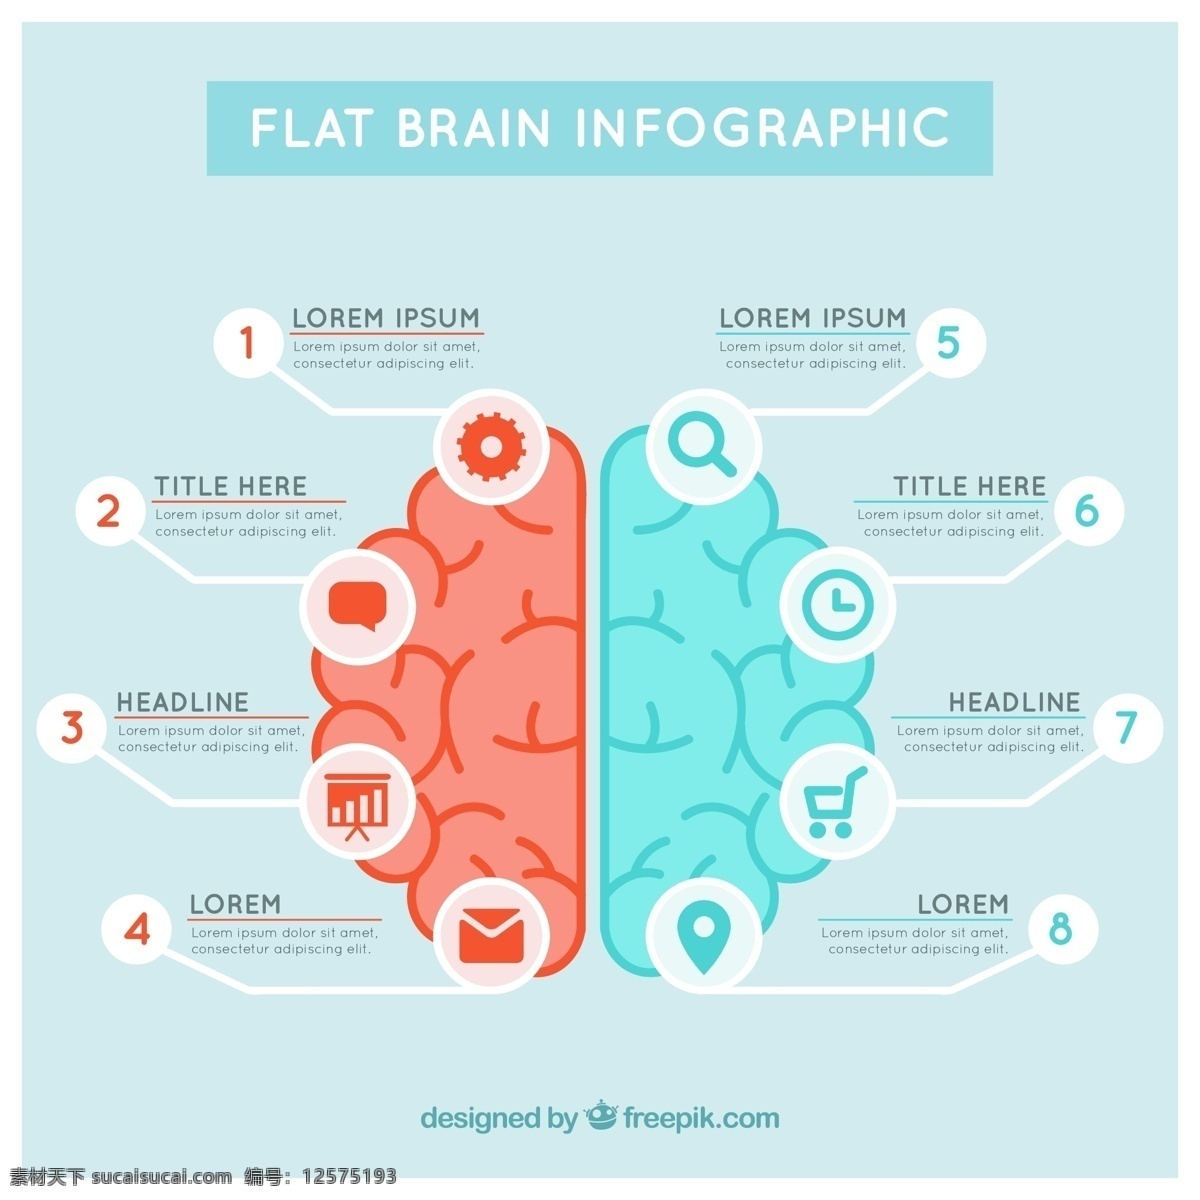 大脑 信息 图表 模板 蓝色 红色 色调 蓝 红 脑 营销 平面 创意 工艺图表模板 数据 平面设计 图形创意 信息图形